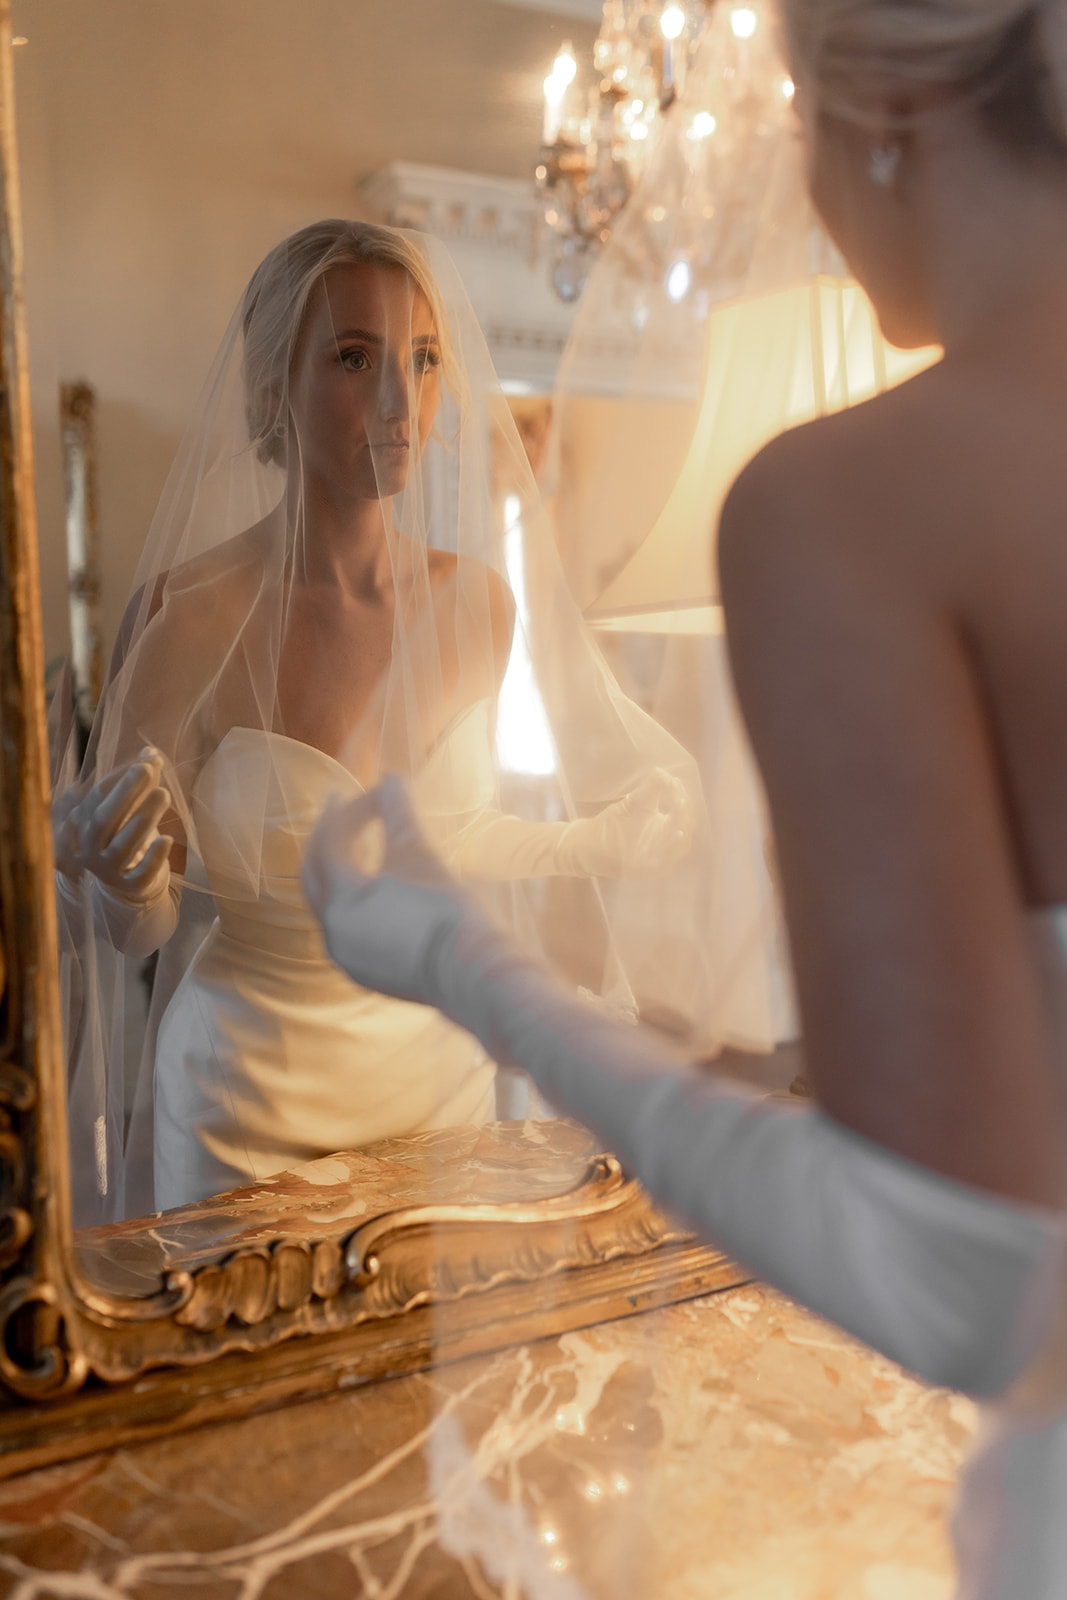 Golden framed mirror showing woman in wedding dress. Photographed over brides shoulder.